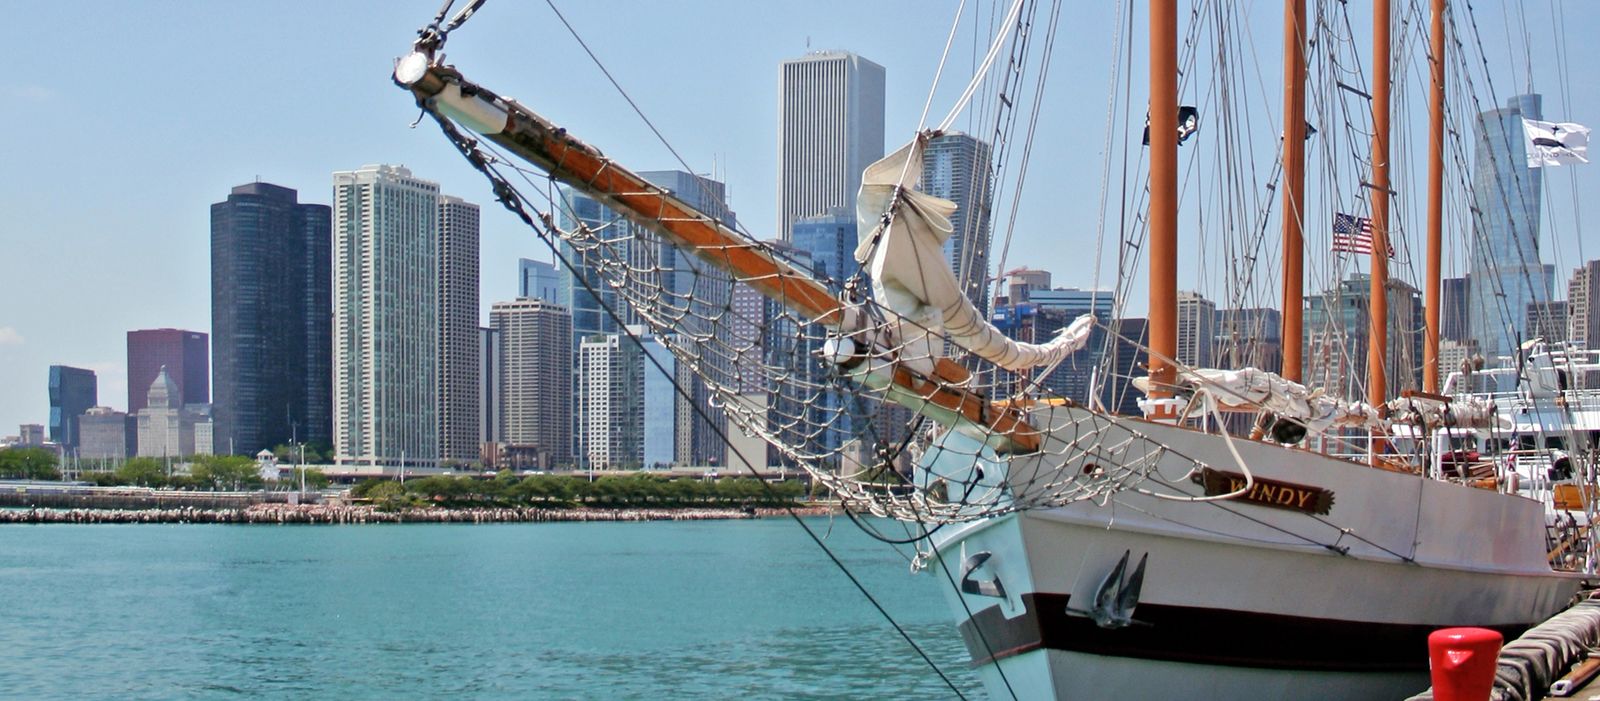 Segelschiff Windy im Hafen von Chicago